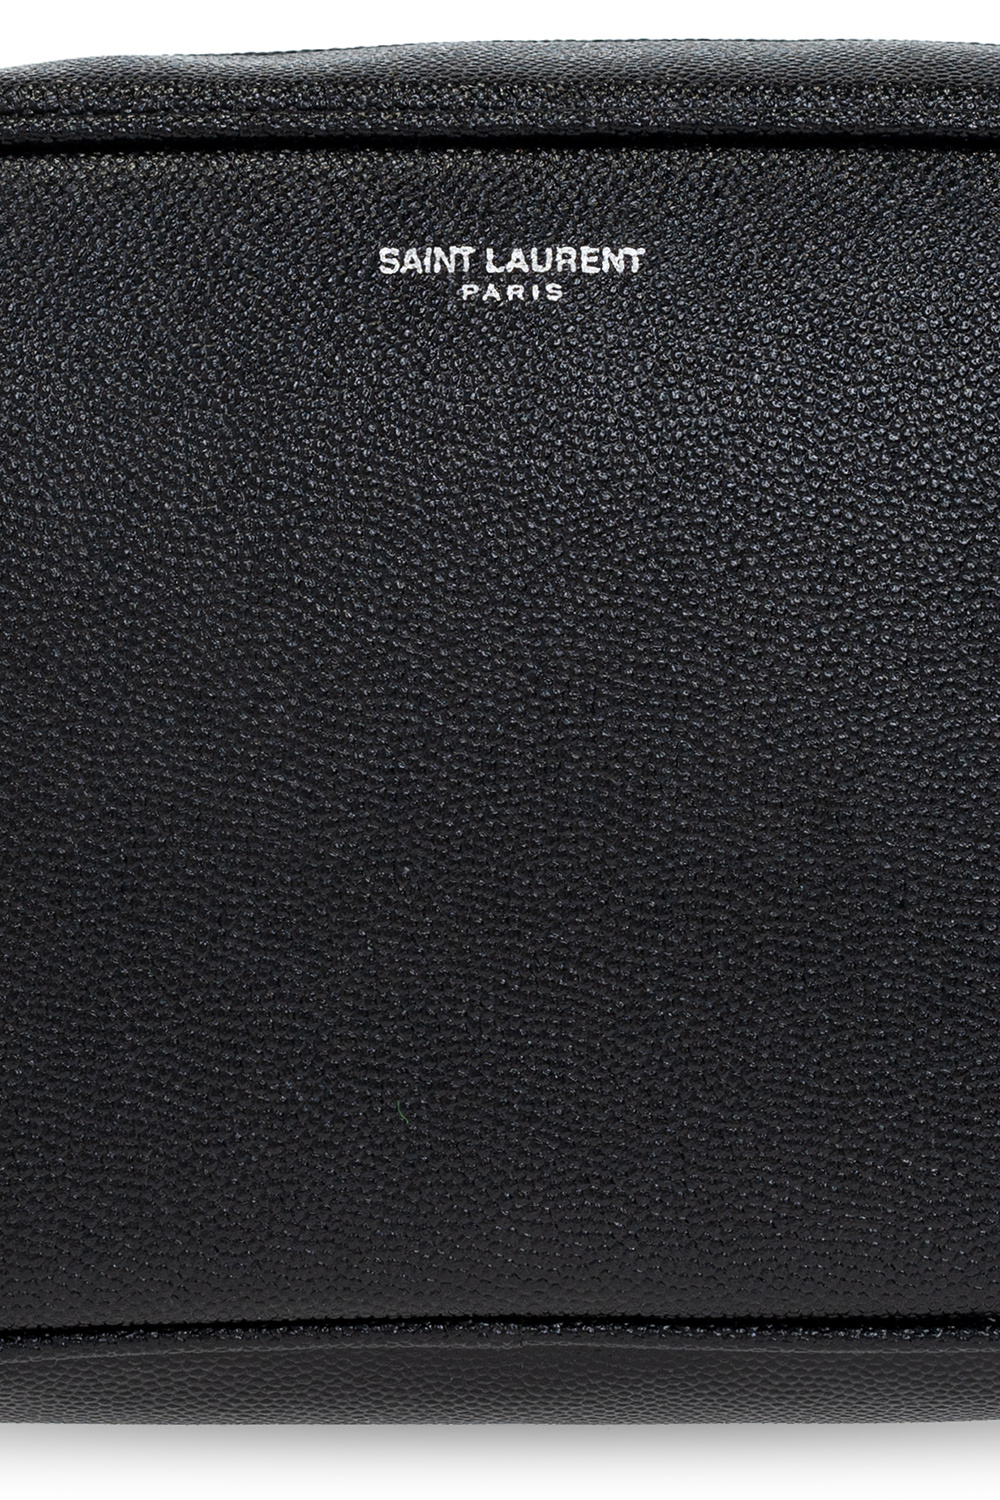 Saint Laurent Wash bag with logo